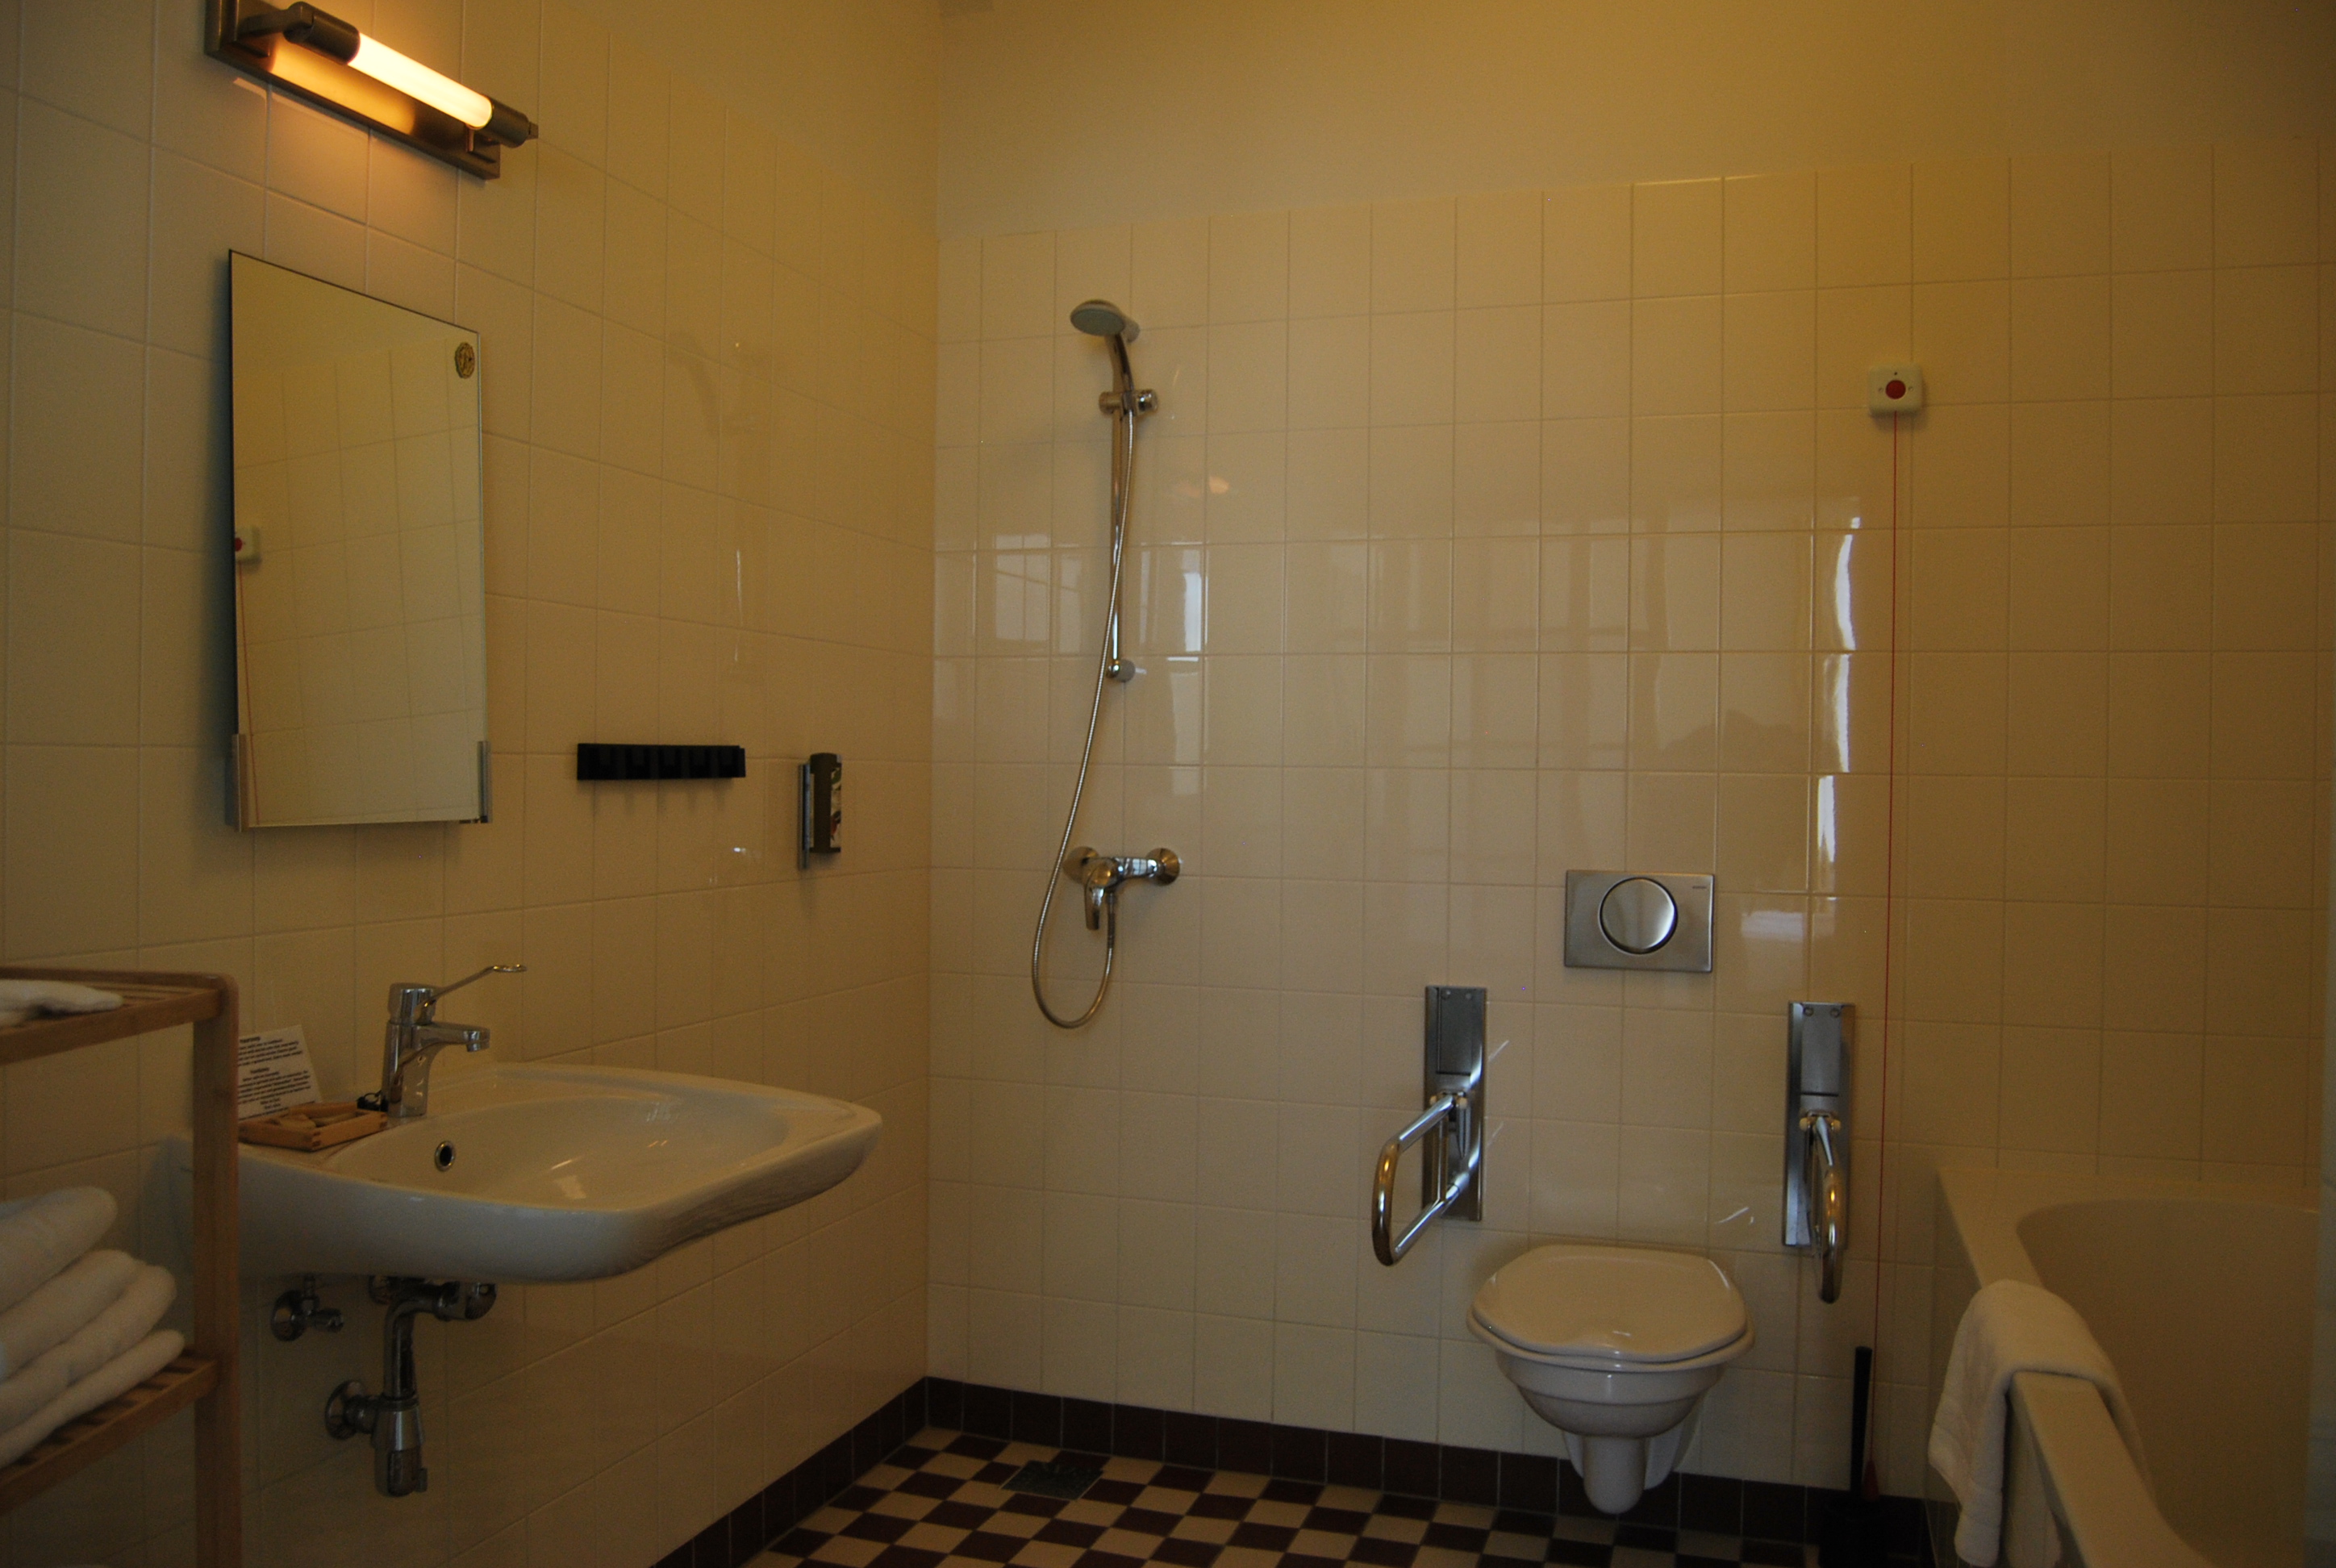 een afbeelding van een aangepaste badkamer voor mindervaliden, welke rolstoeltoegangelijk is. 